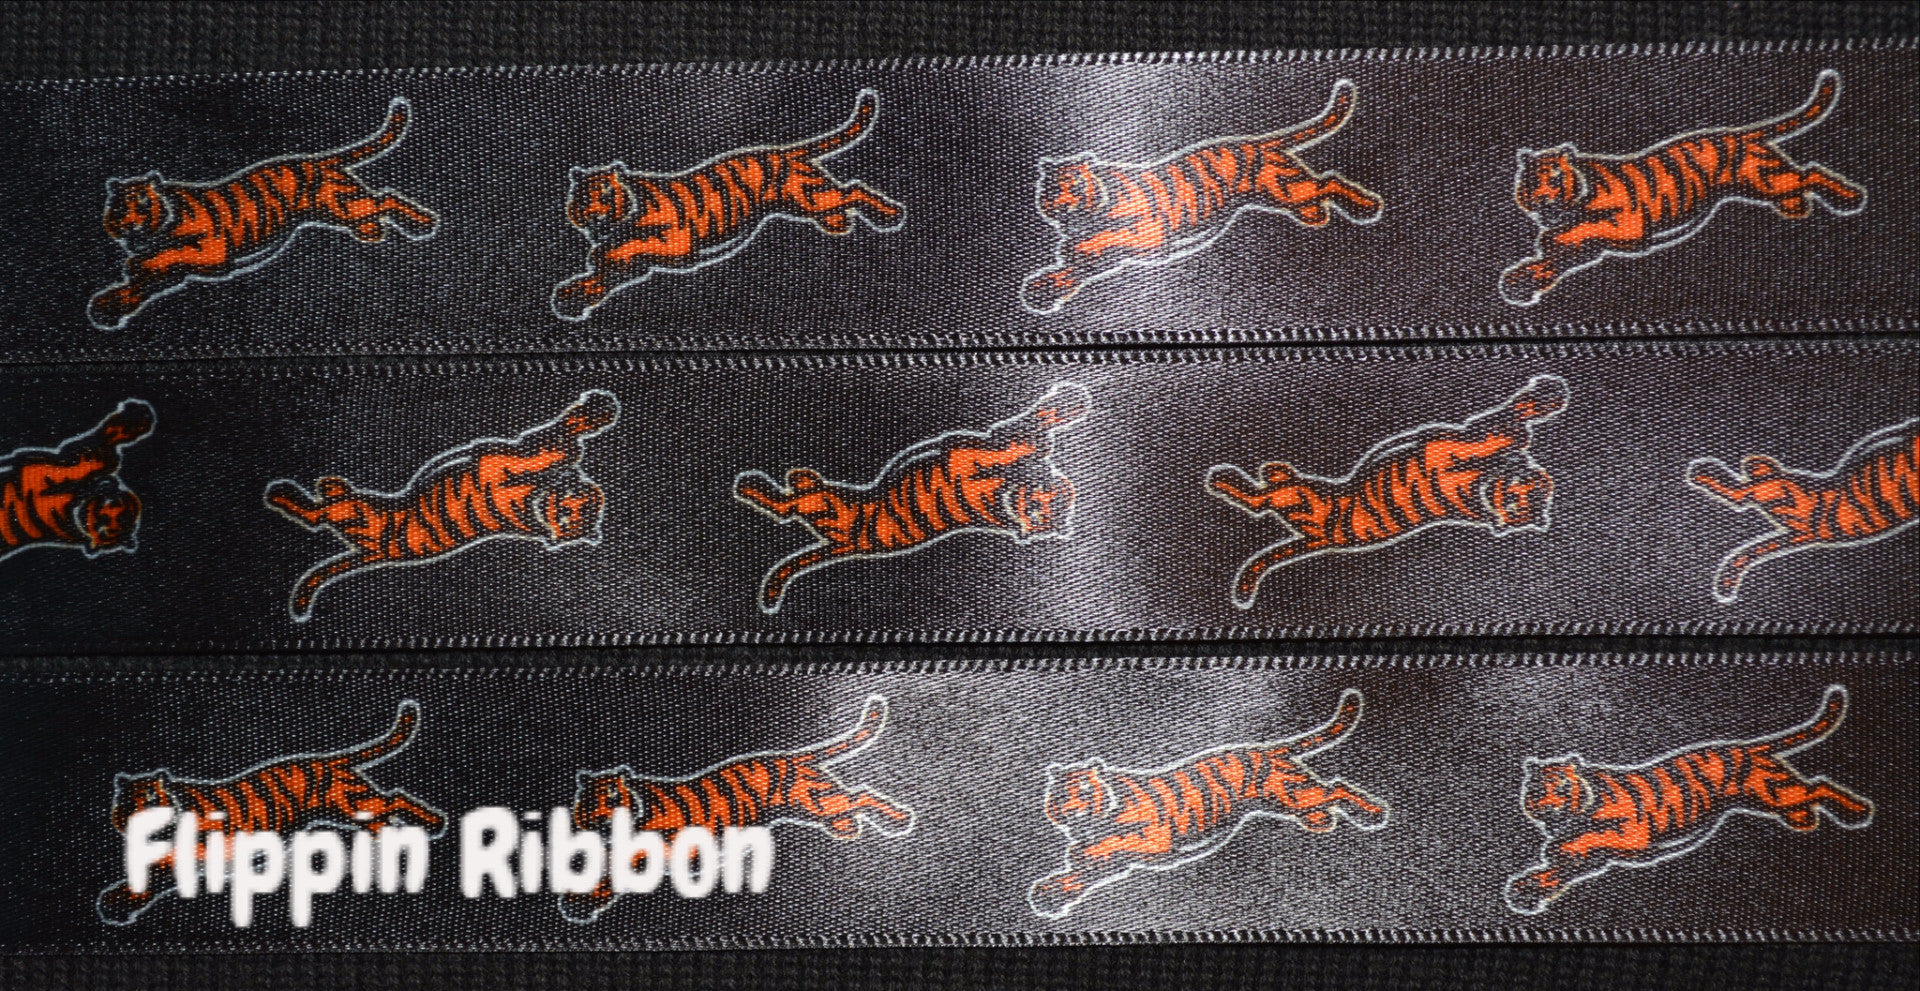 Cincinnati Bengals Ribbon - 7/8 inch Printed Satin Ribbon